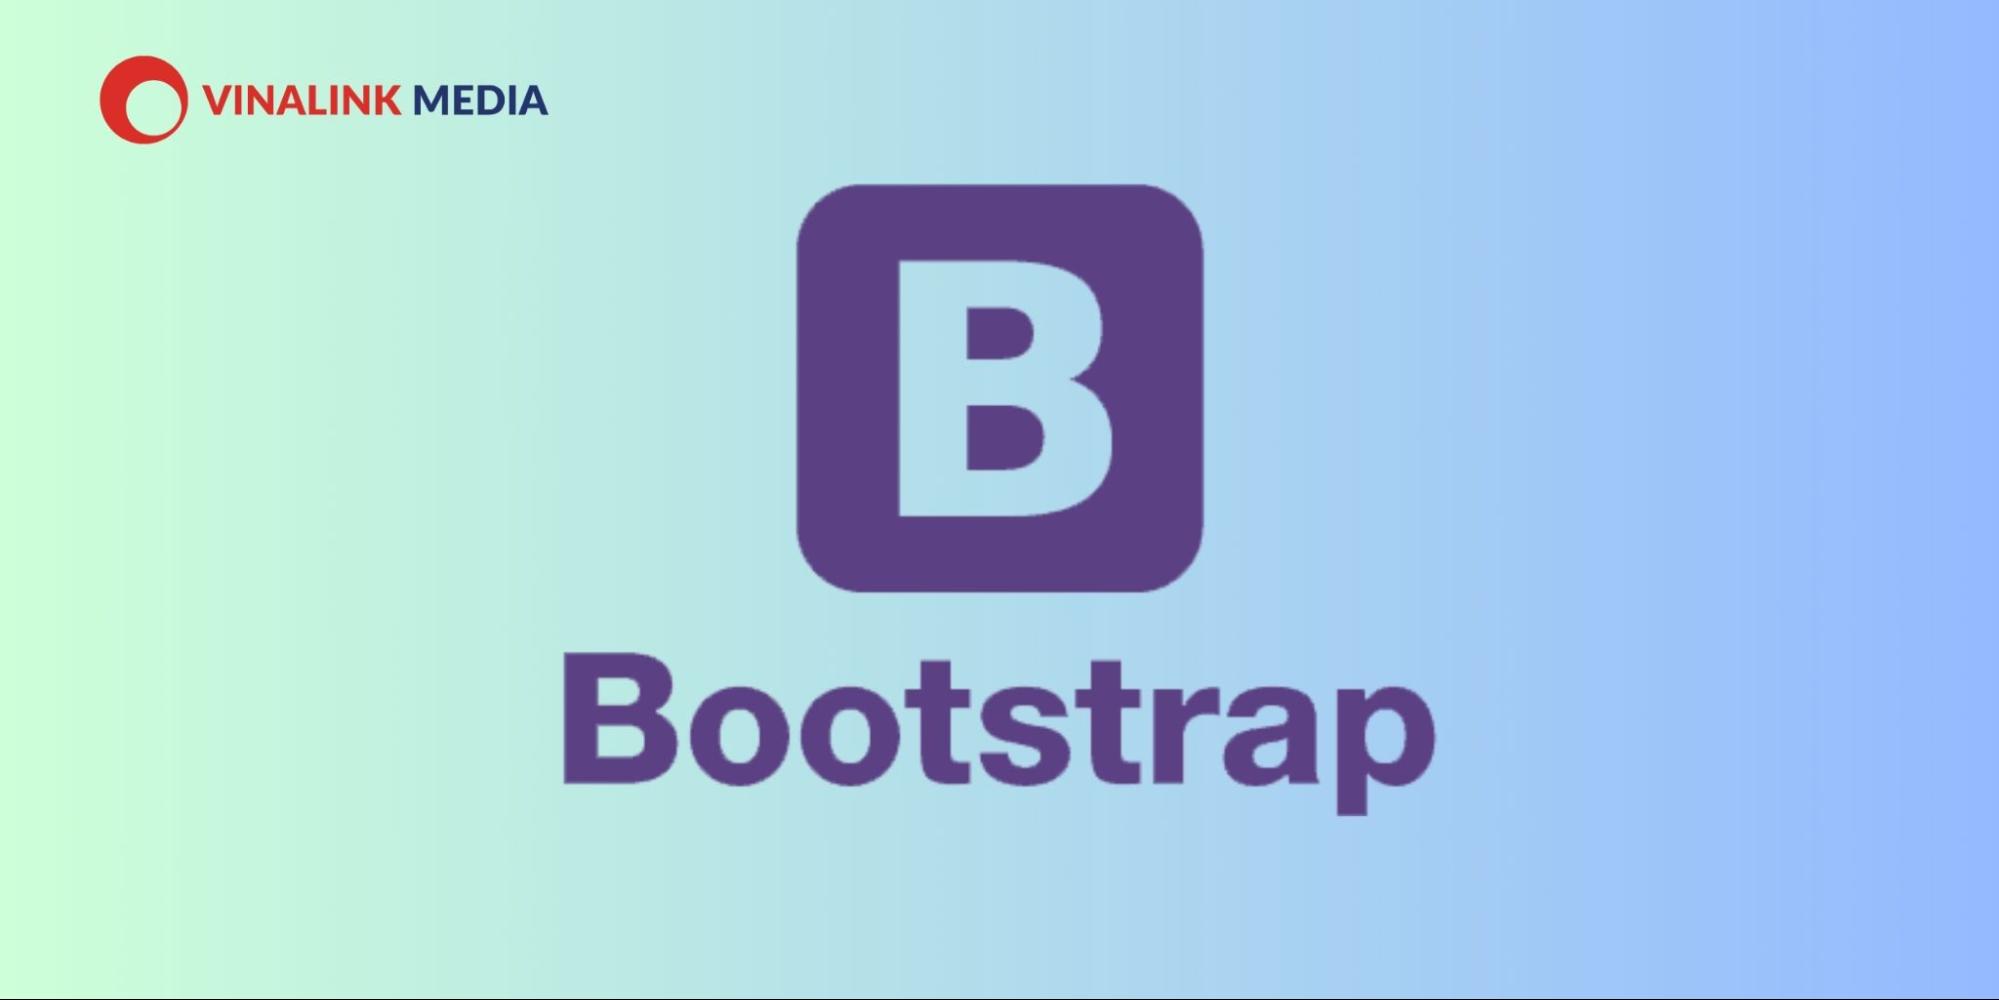 Bootstrap là một dự án mã nguồn mở do Mark Otto và Jacob Thornton